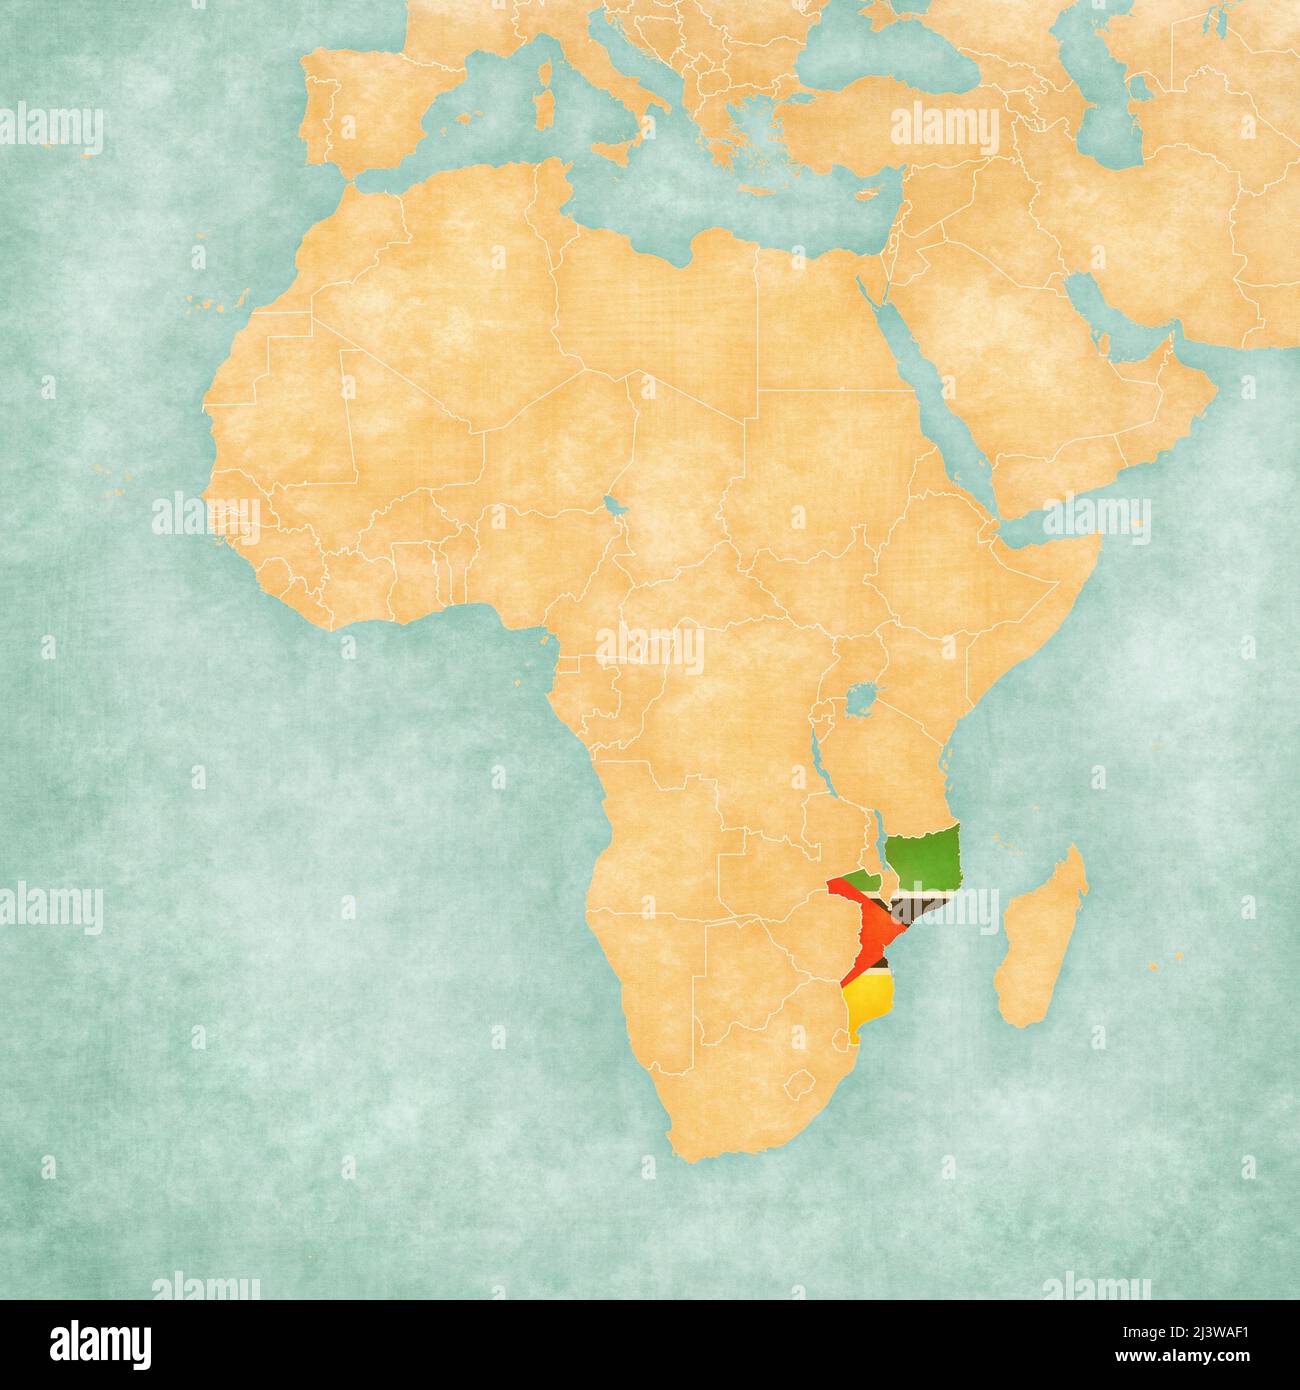 Mozambico (bandiera mozambicana) sulla mappa dell'Africa. La mappa è in morbido grunge e vintage stile, come la pittura acquerello su carta vecchia. Foto Stock